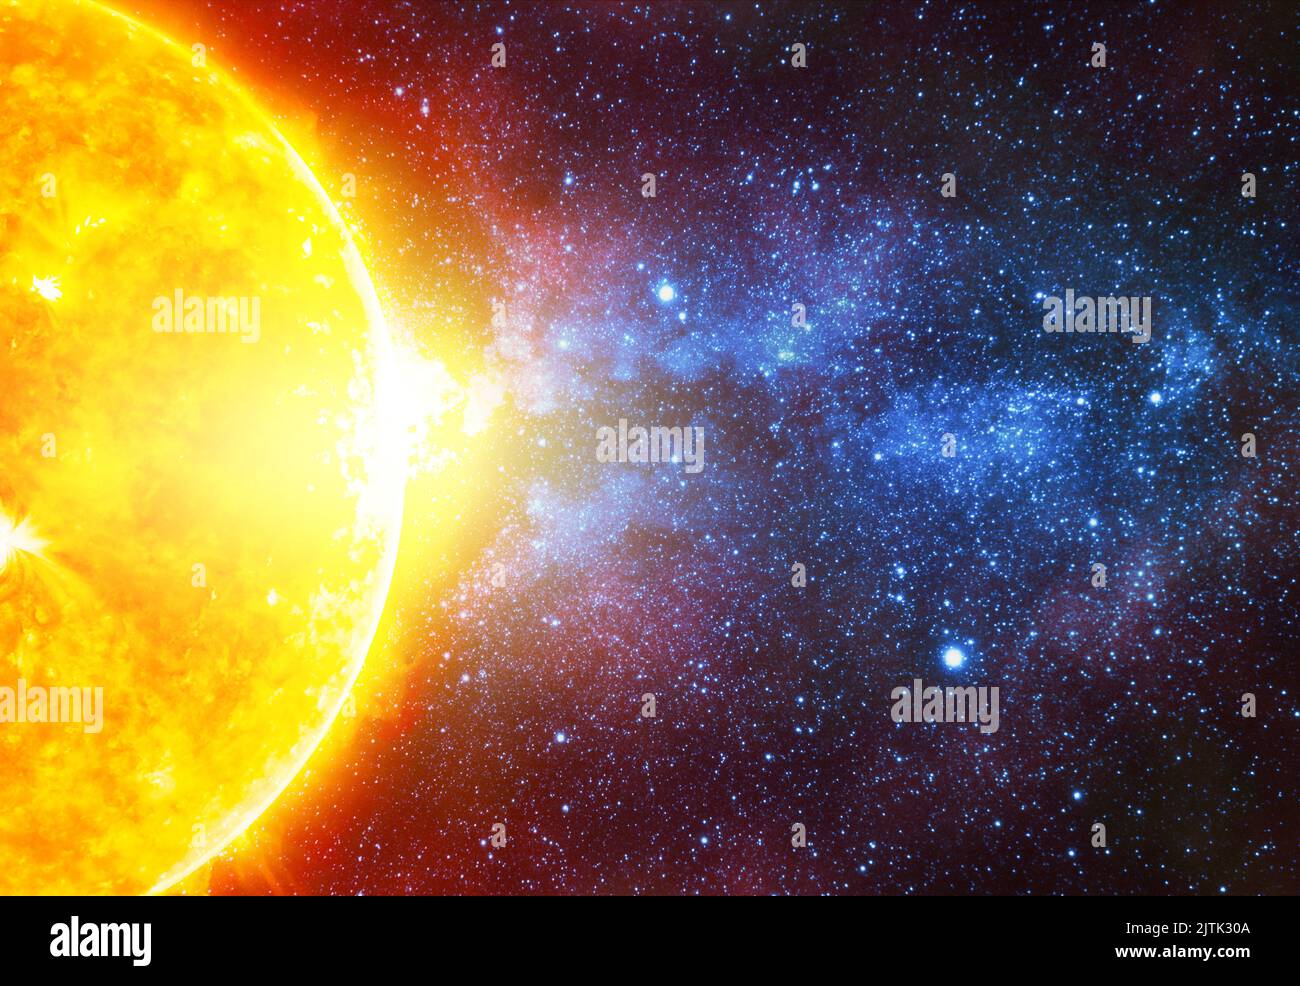 Heller Stern gegen dunklen Sternenhimmel, der von der Milchstraße irgendwo im fernen Raum geschnitten wurde, Elemente dieses Bildes, die von der NASA eingerichtet wurden Stockfoto